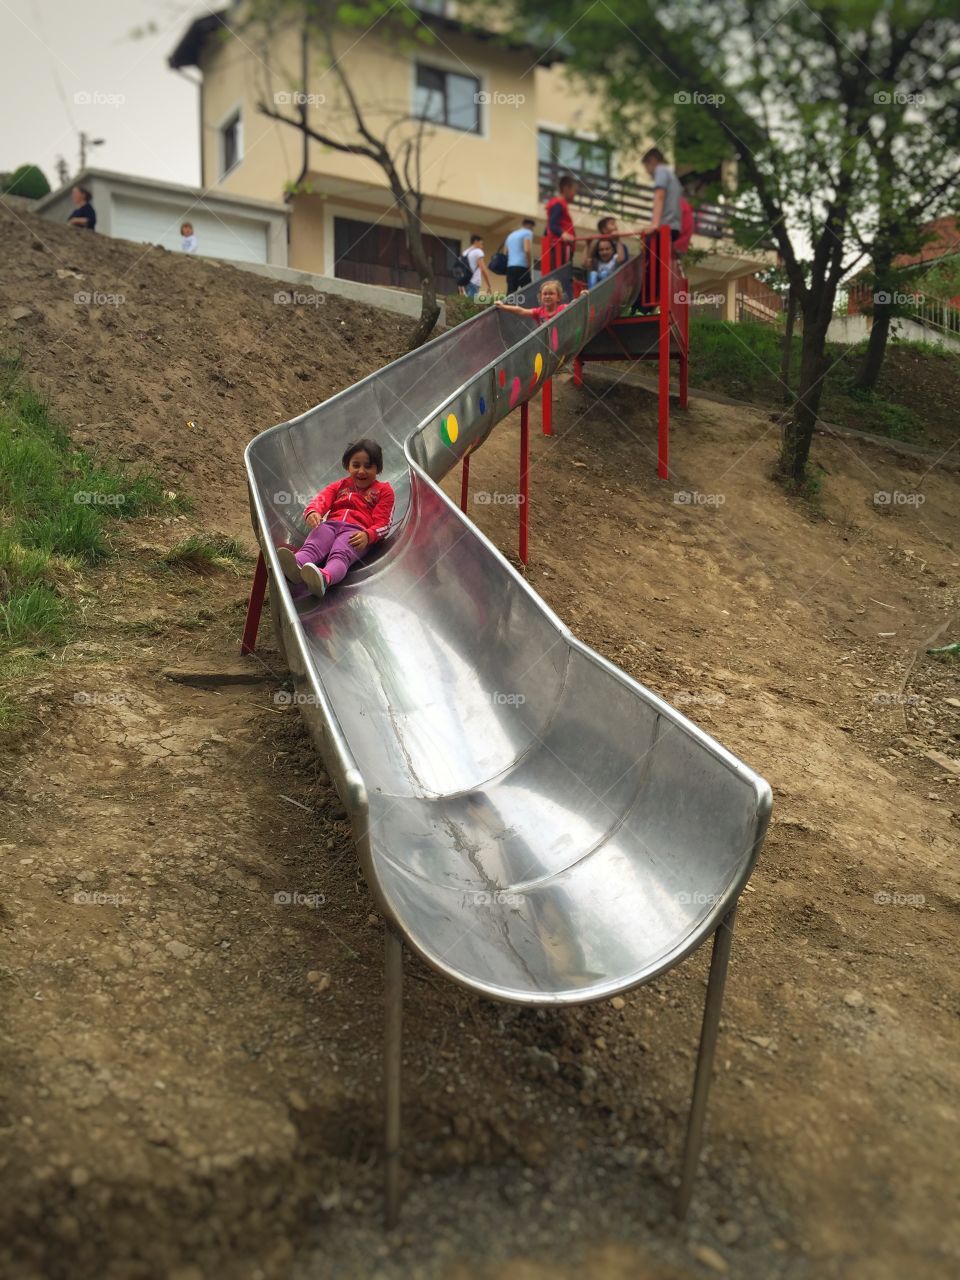 Slide in park for kids
